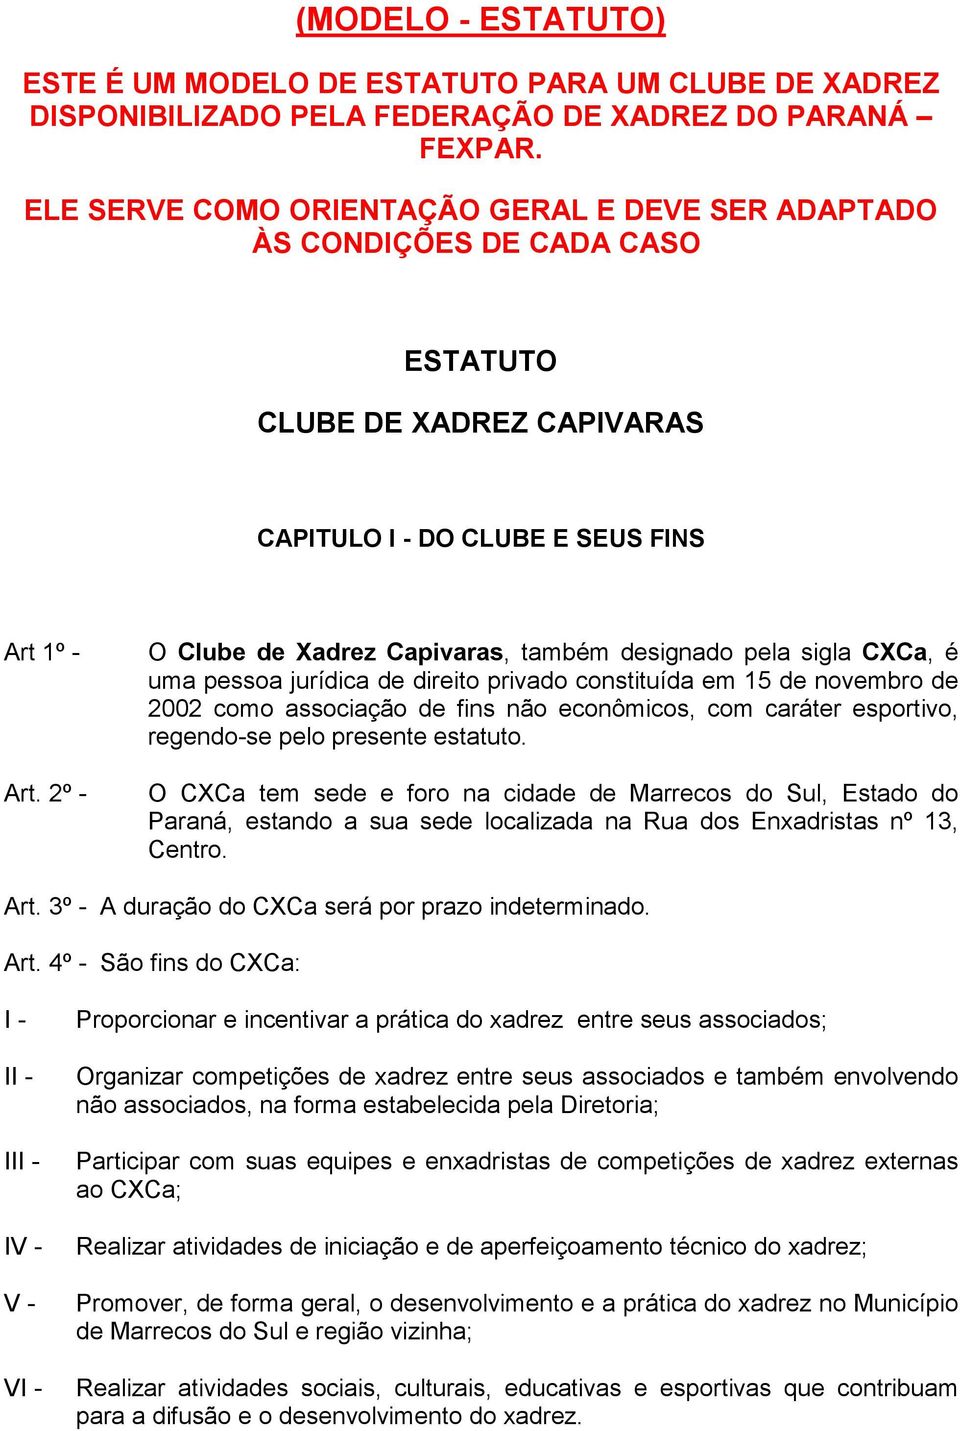 2º - O Clube de Xadrez Capivaras, também designado pela sigla CXCa, é uma pessoa jurídica de direito privado constituída em 15 de novembro de 2002 como associação de fins não econômicos, com caráter